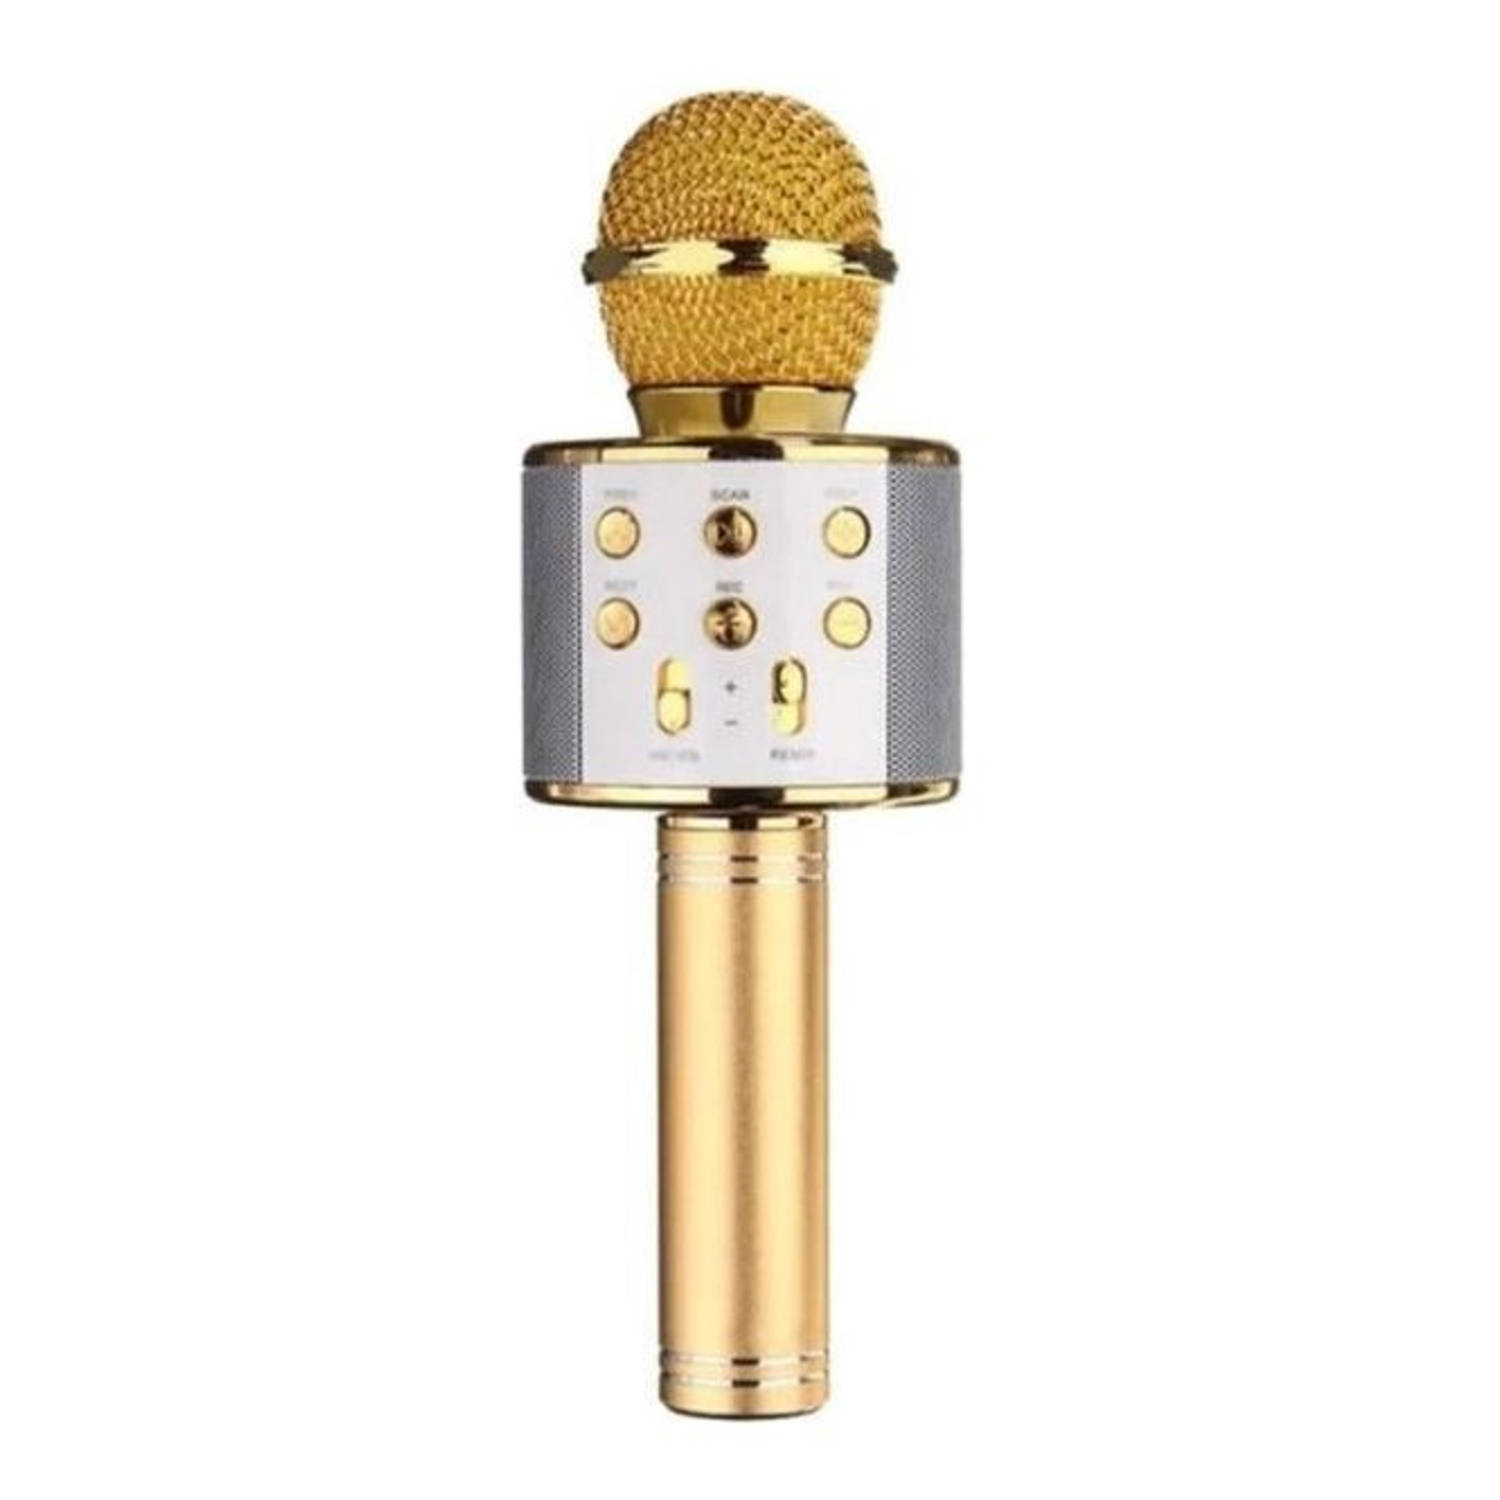 vaak ramp schuld iBello draadloze karaoke microfoon goud met bluetooth | Blokker